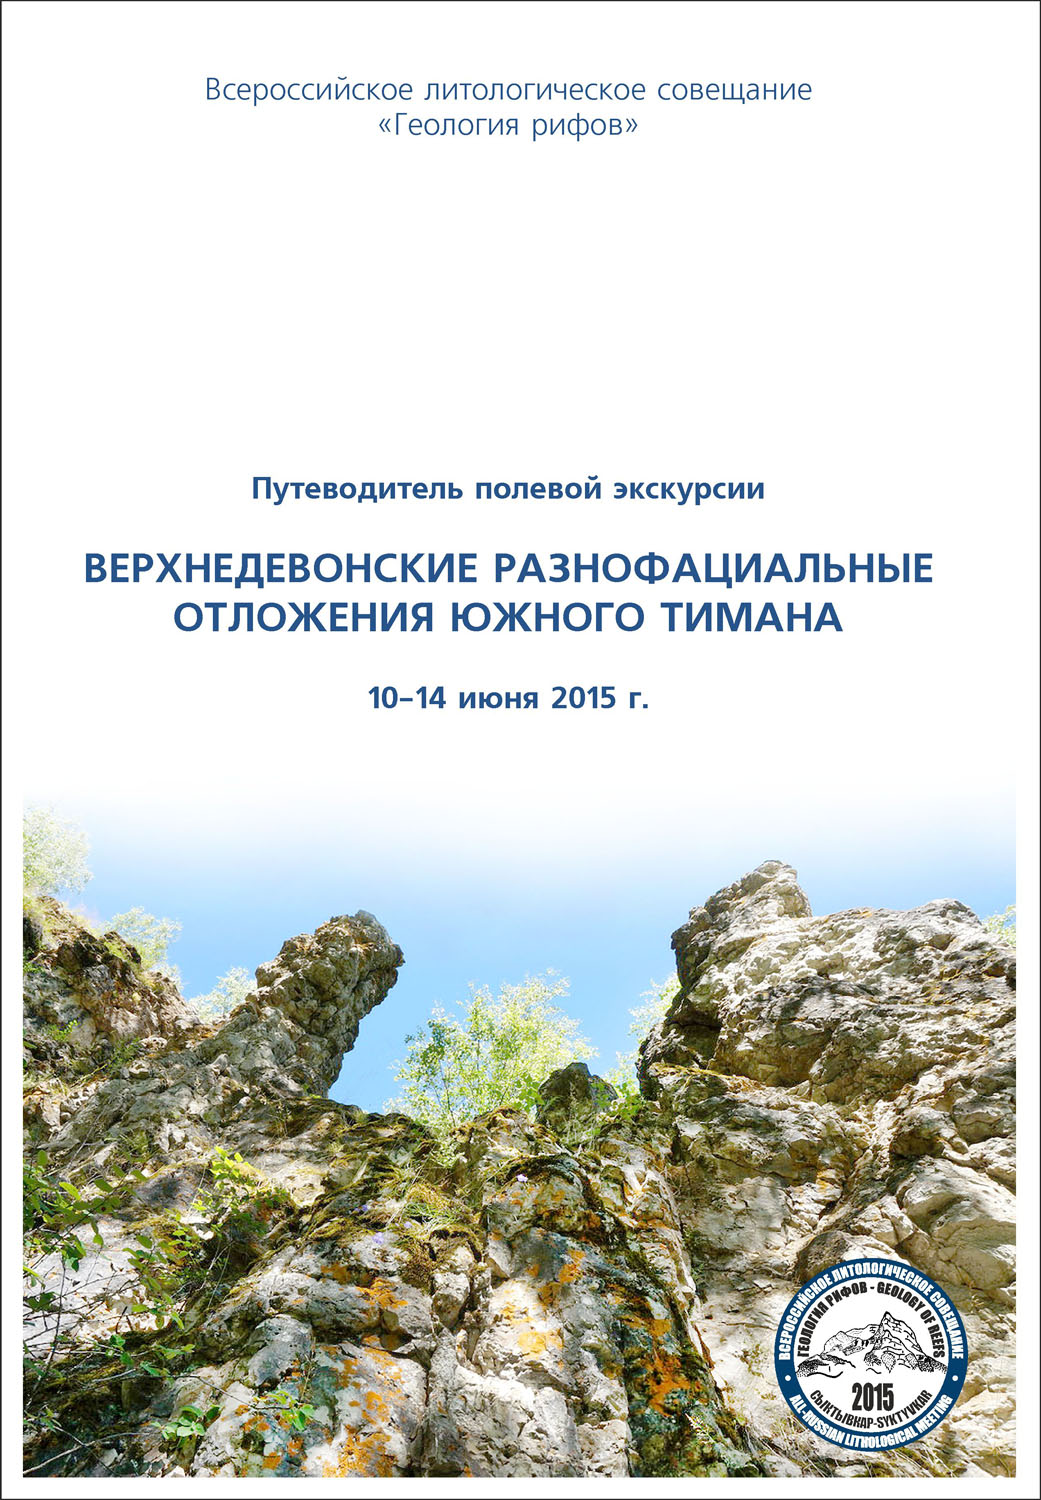 Путеводитель полевой экскурсии Всероссийского литологического совещания «Геология рифов»